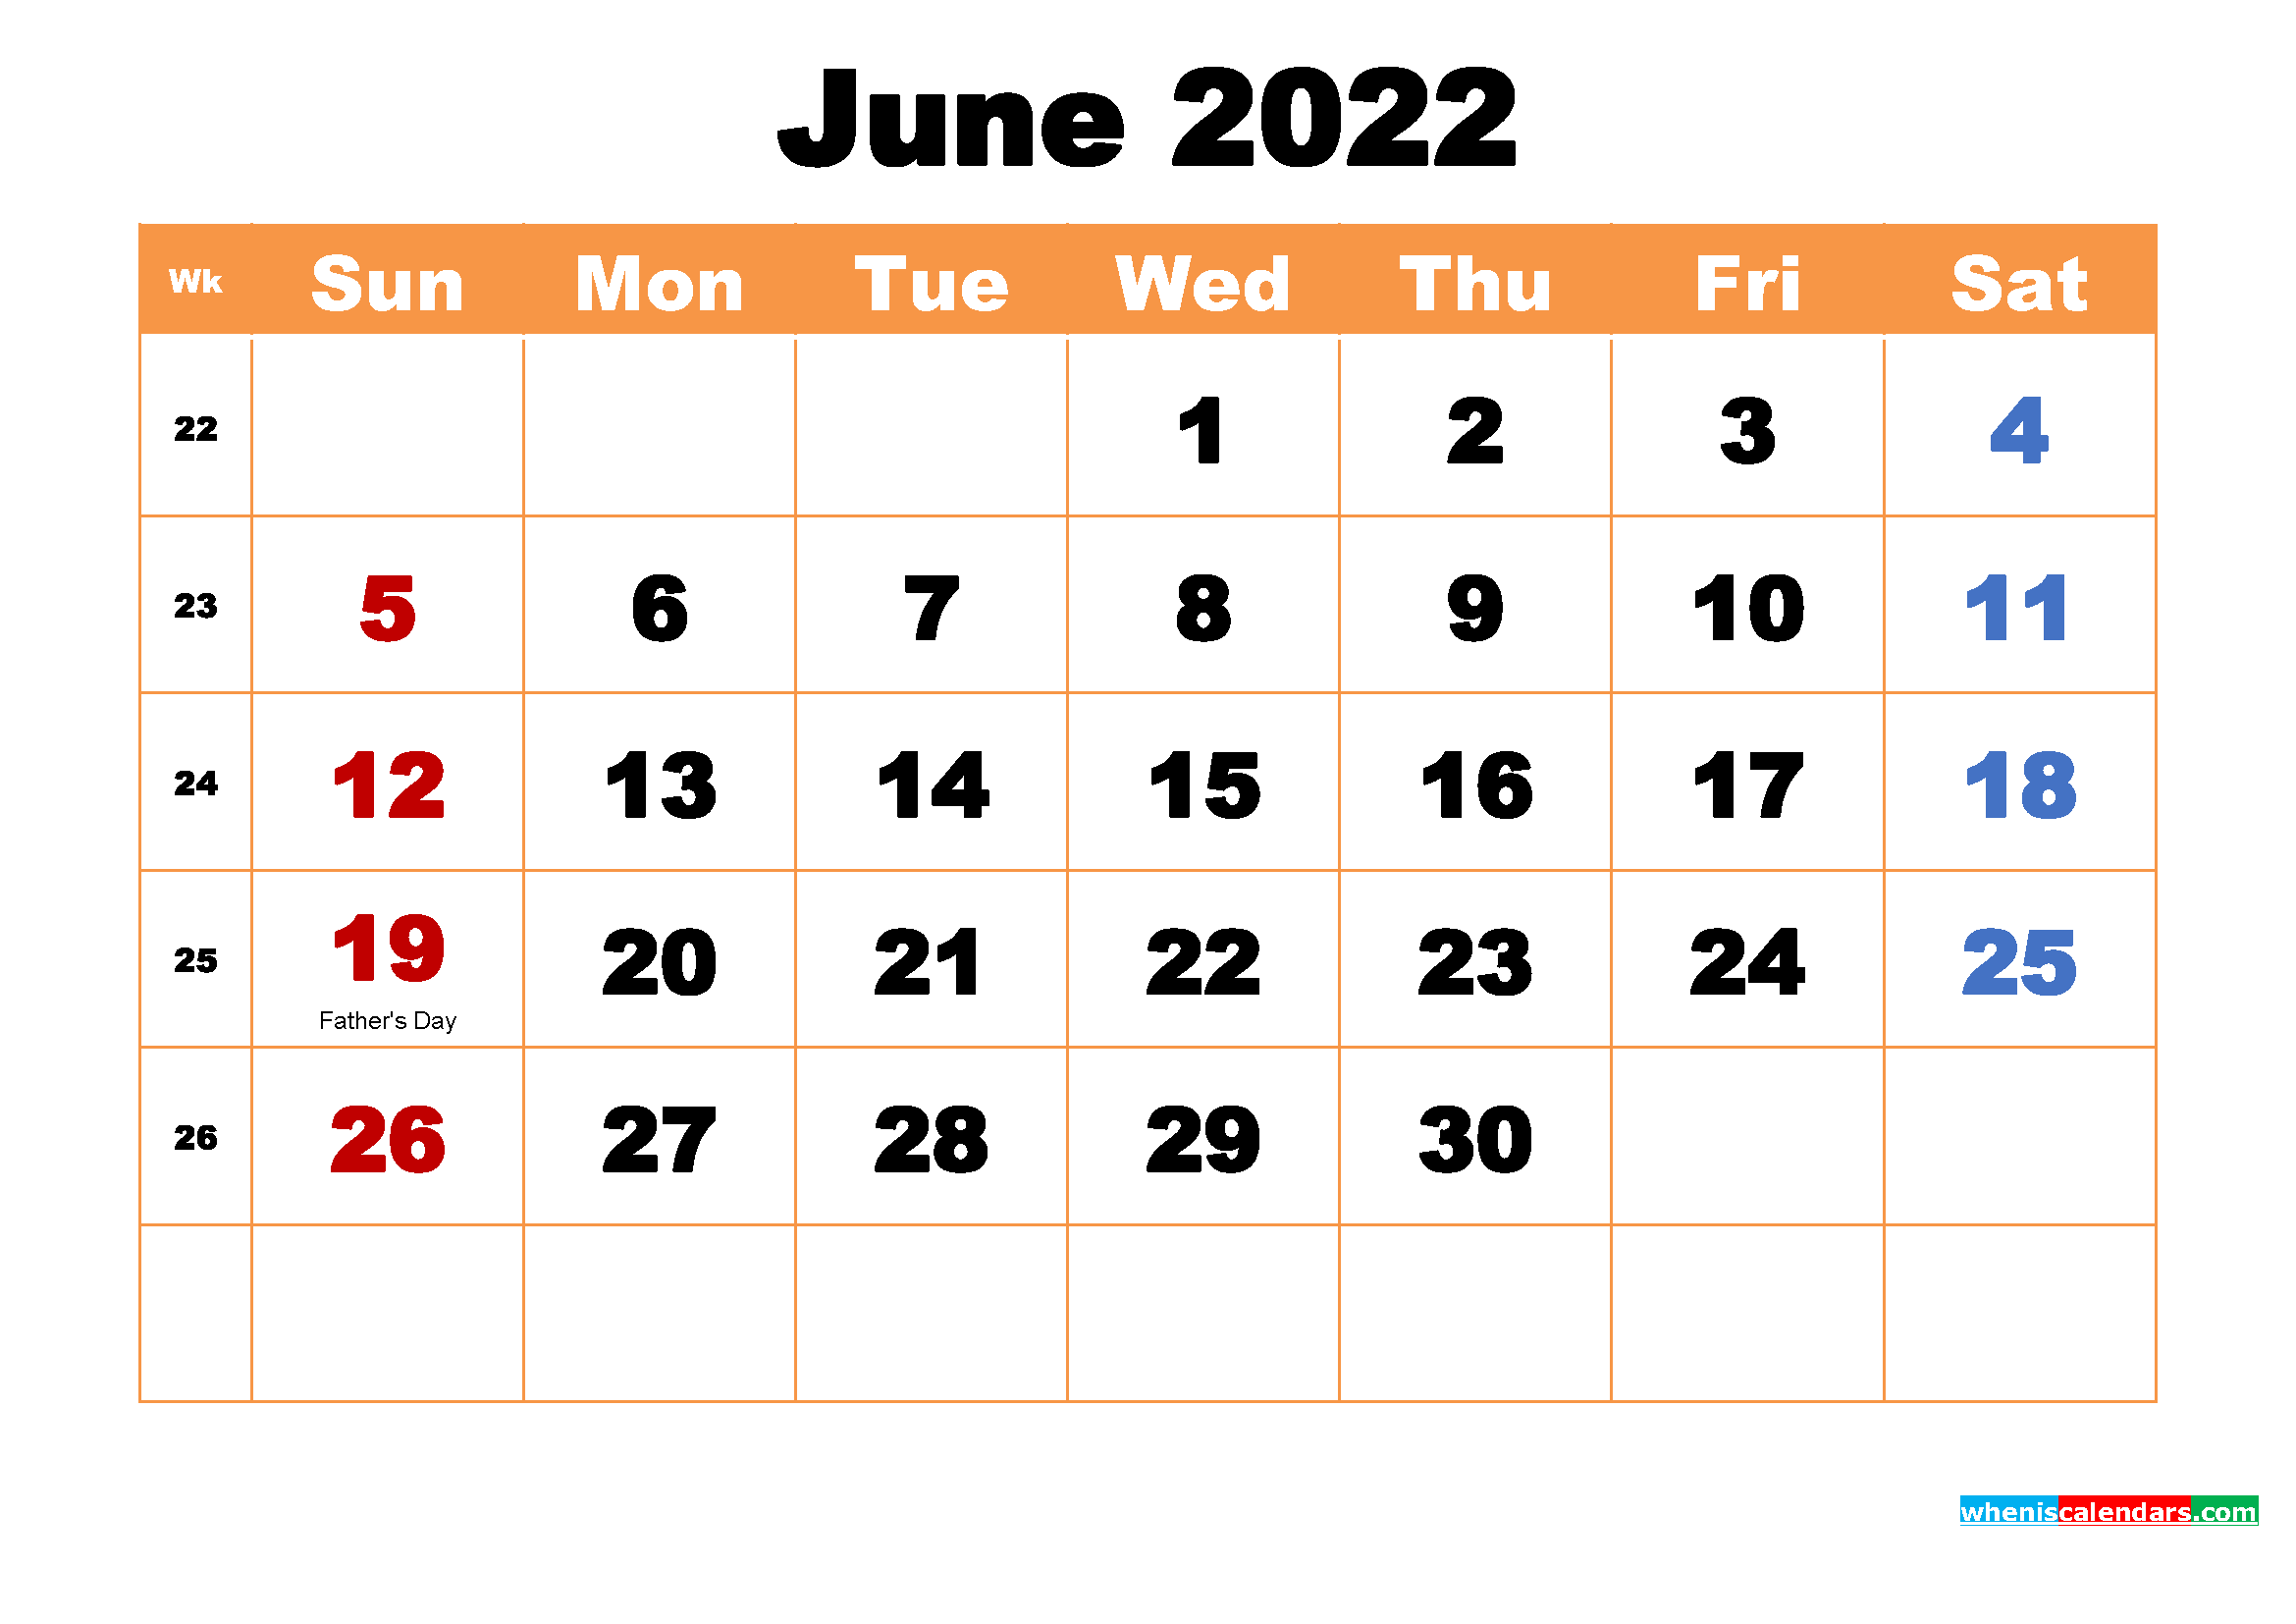 June 2022 Calendar Wallpaper High Resolution 2339x1654